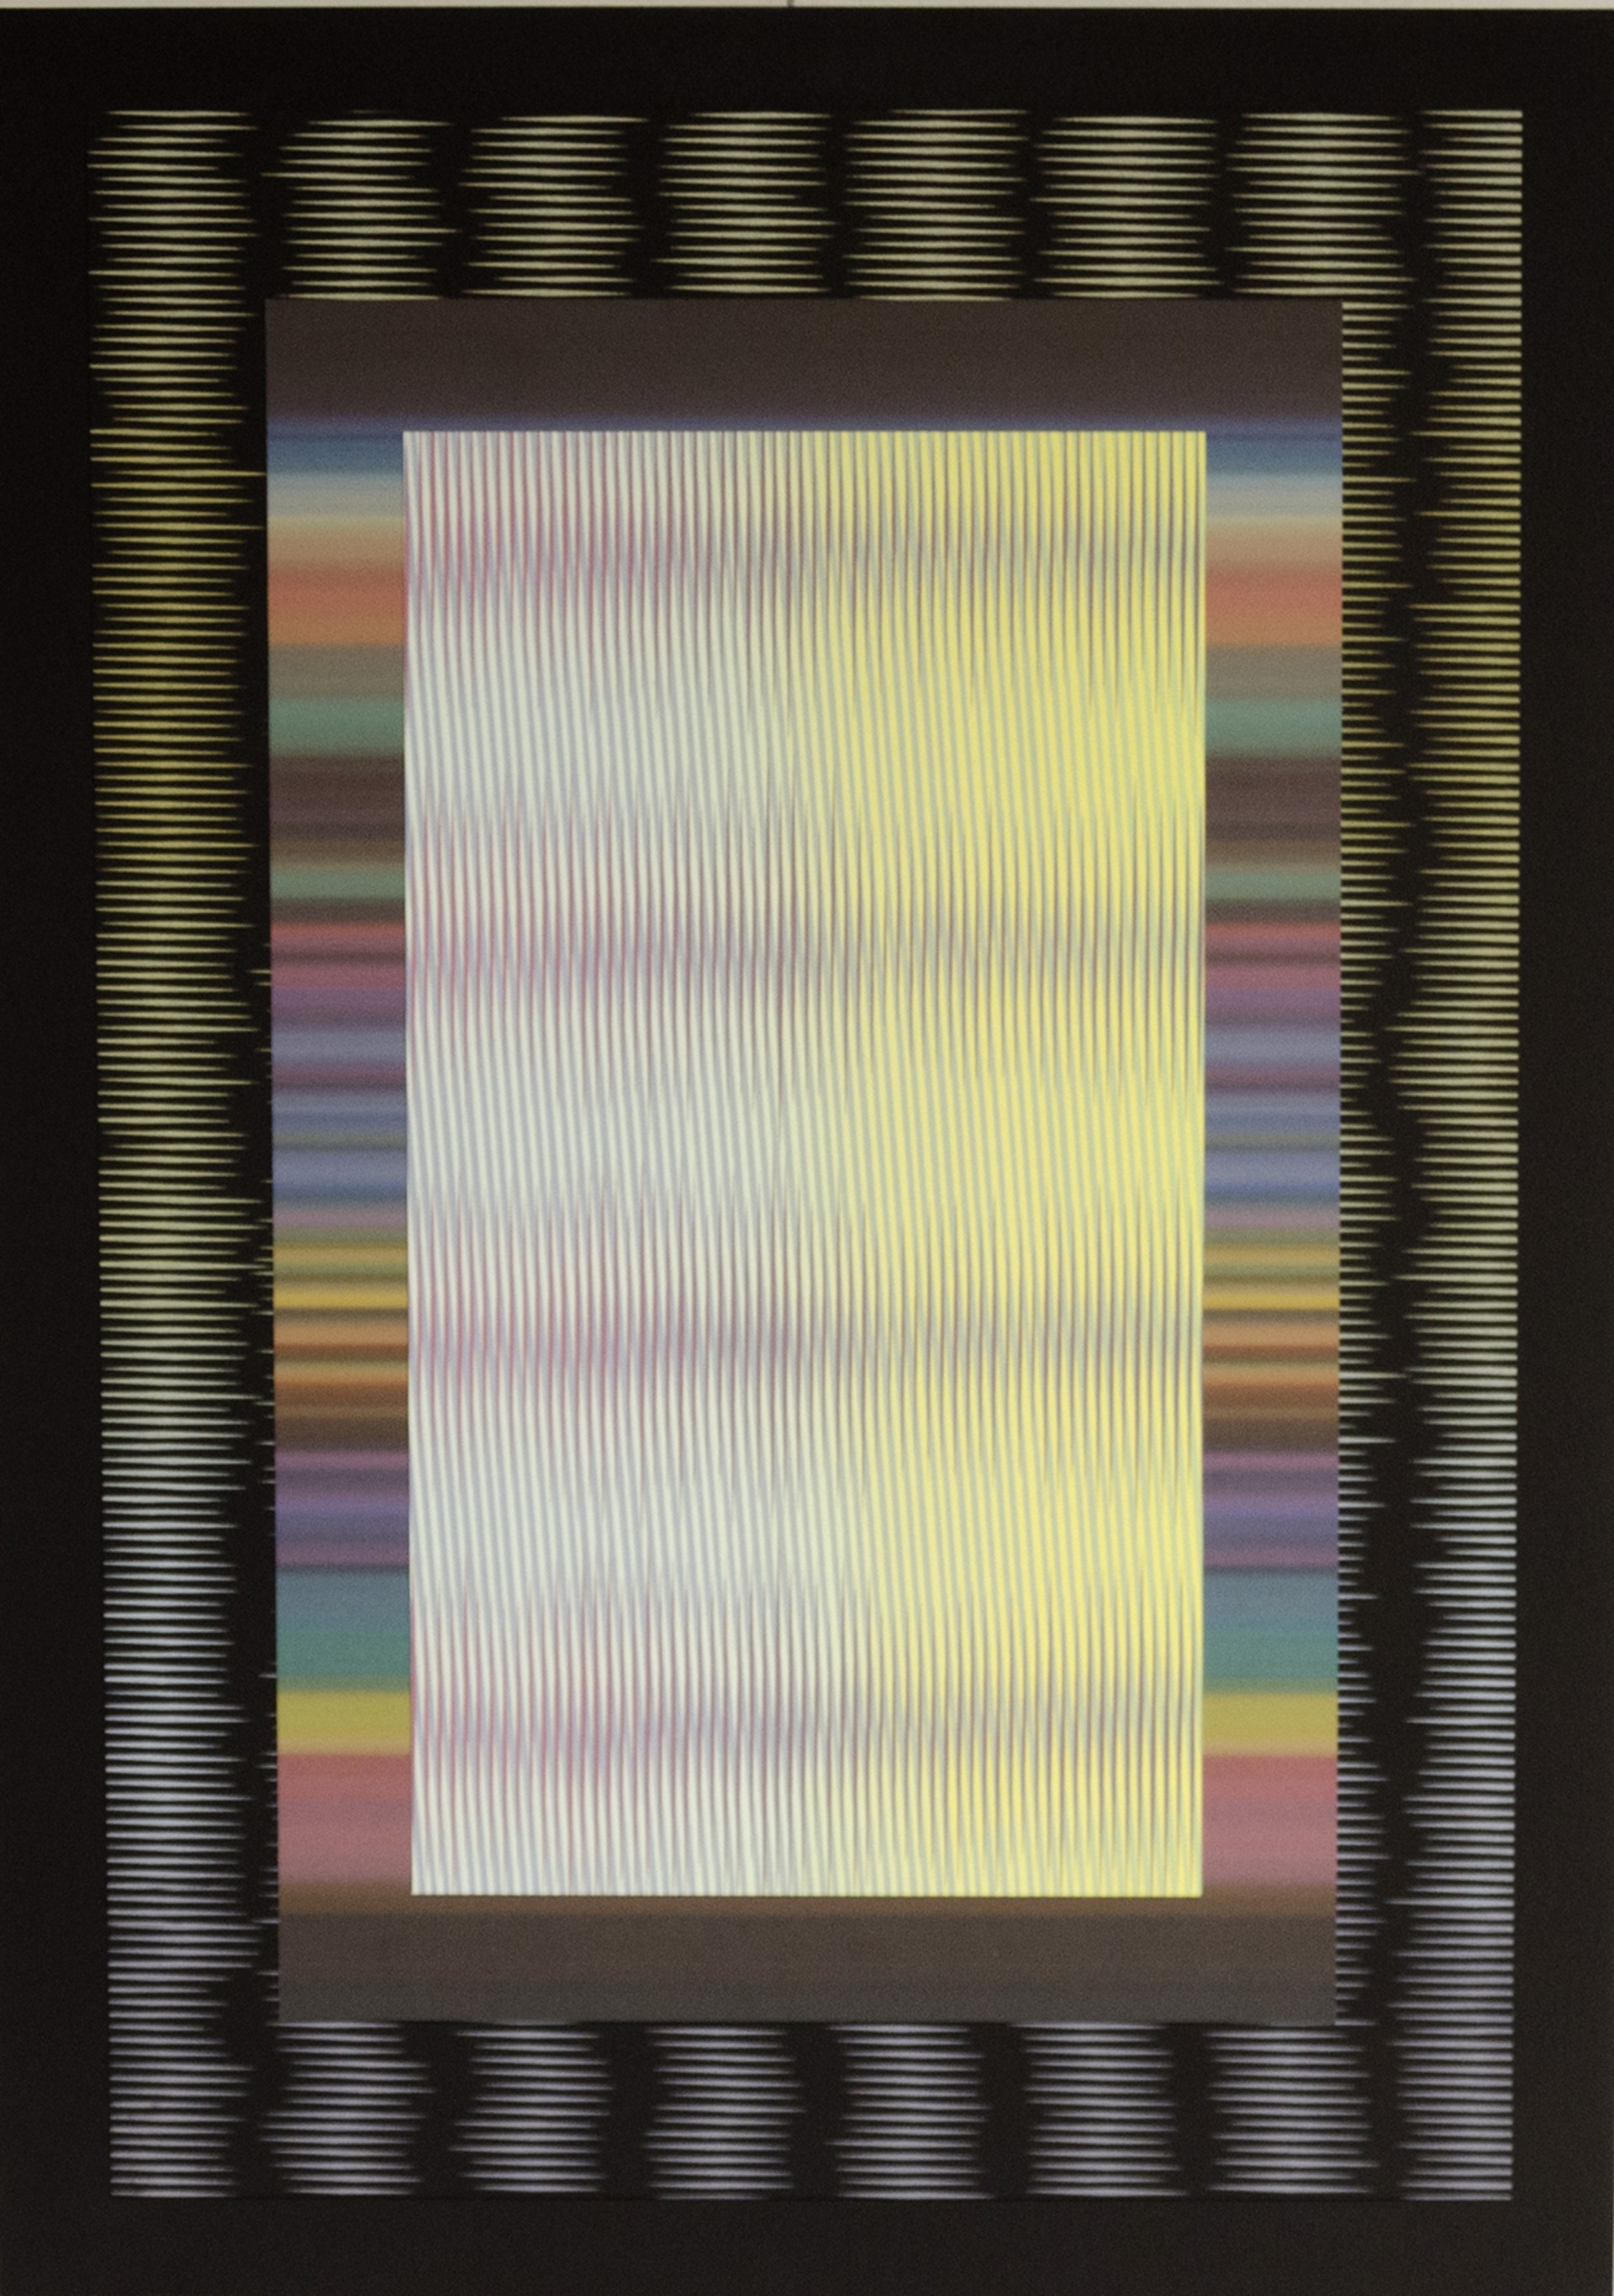 Untitled (Stripe Series 7) by Jon Vogt